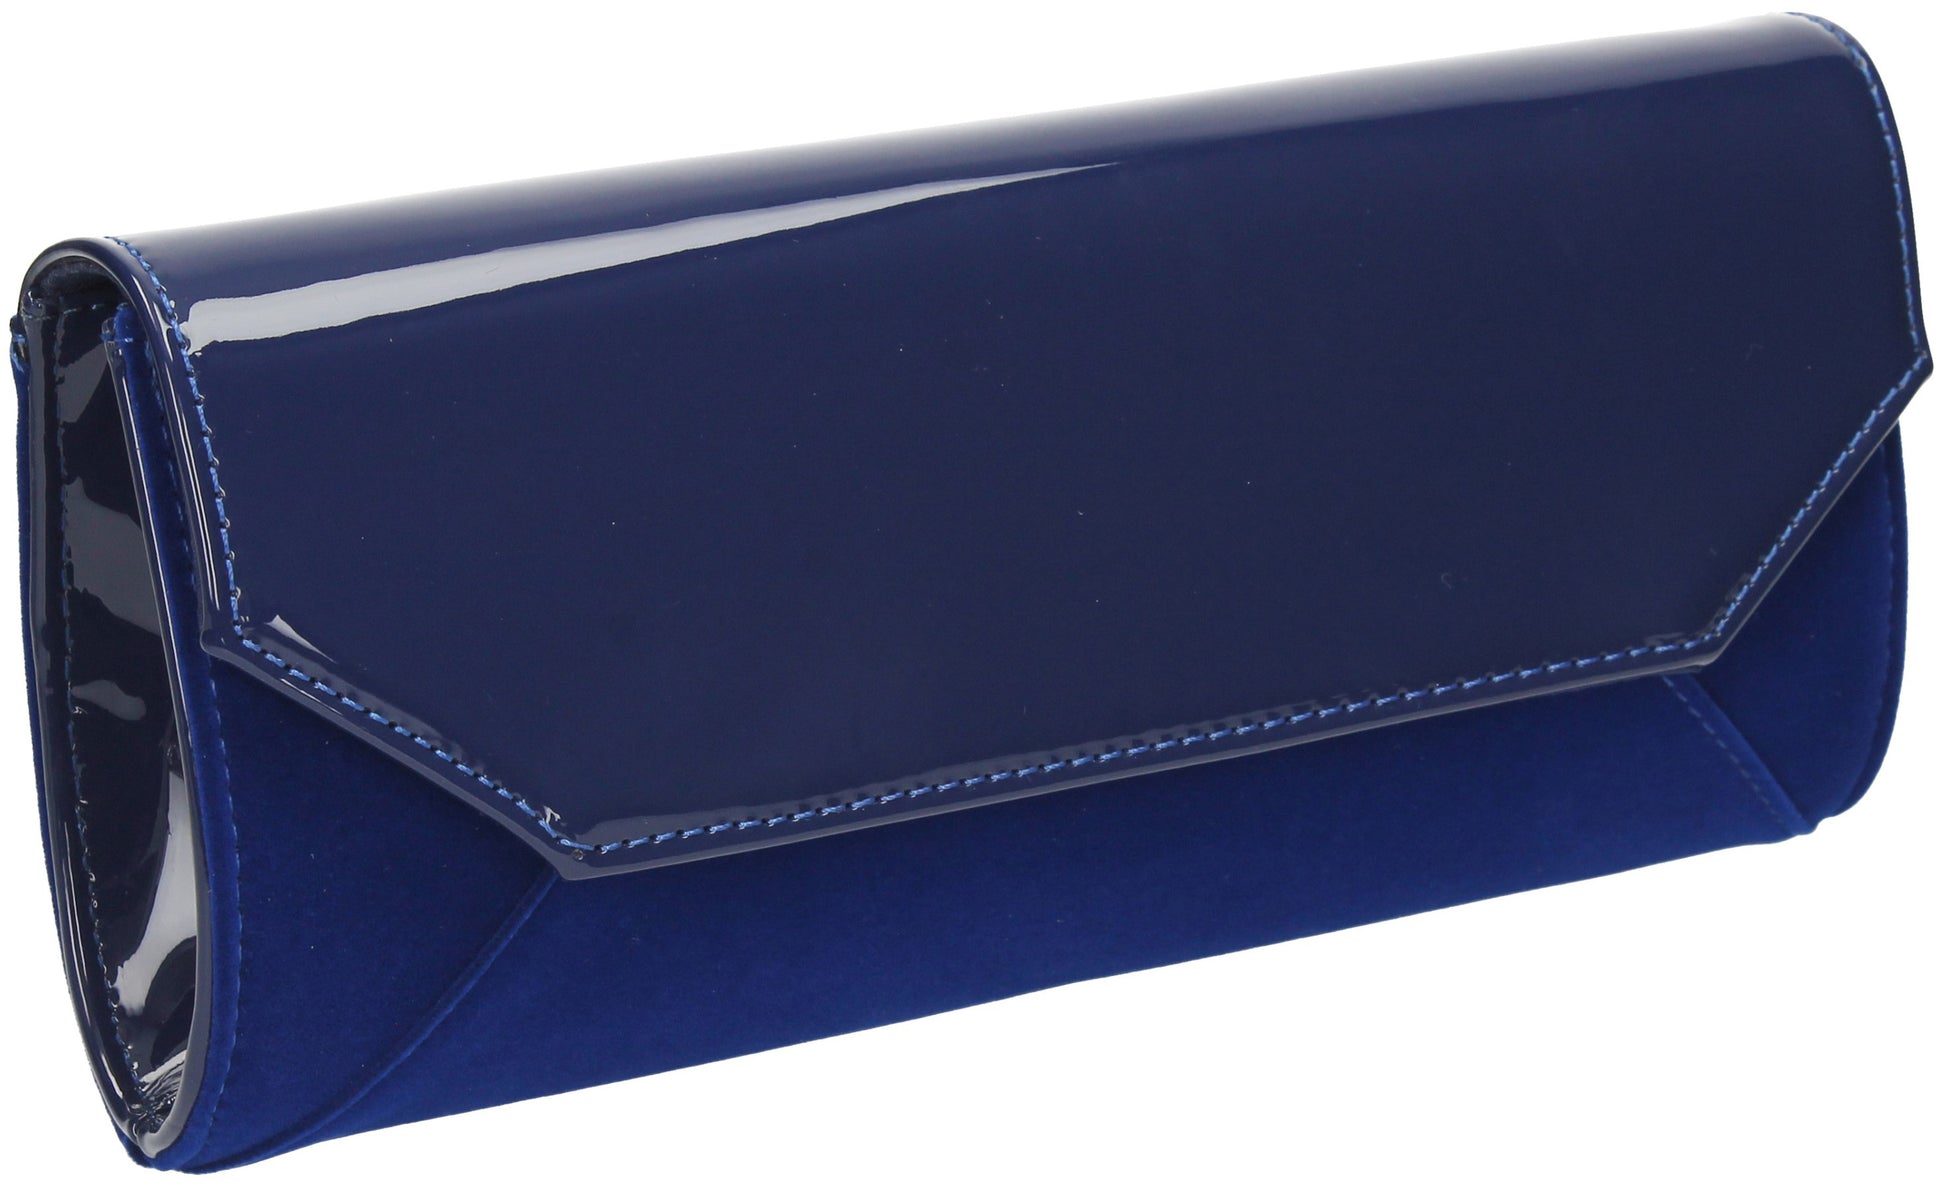 SWANKYSWANS Kiera Clutch Bag Royal Blue Cute Cheap Clutch Bag For Weddings School and Work